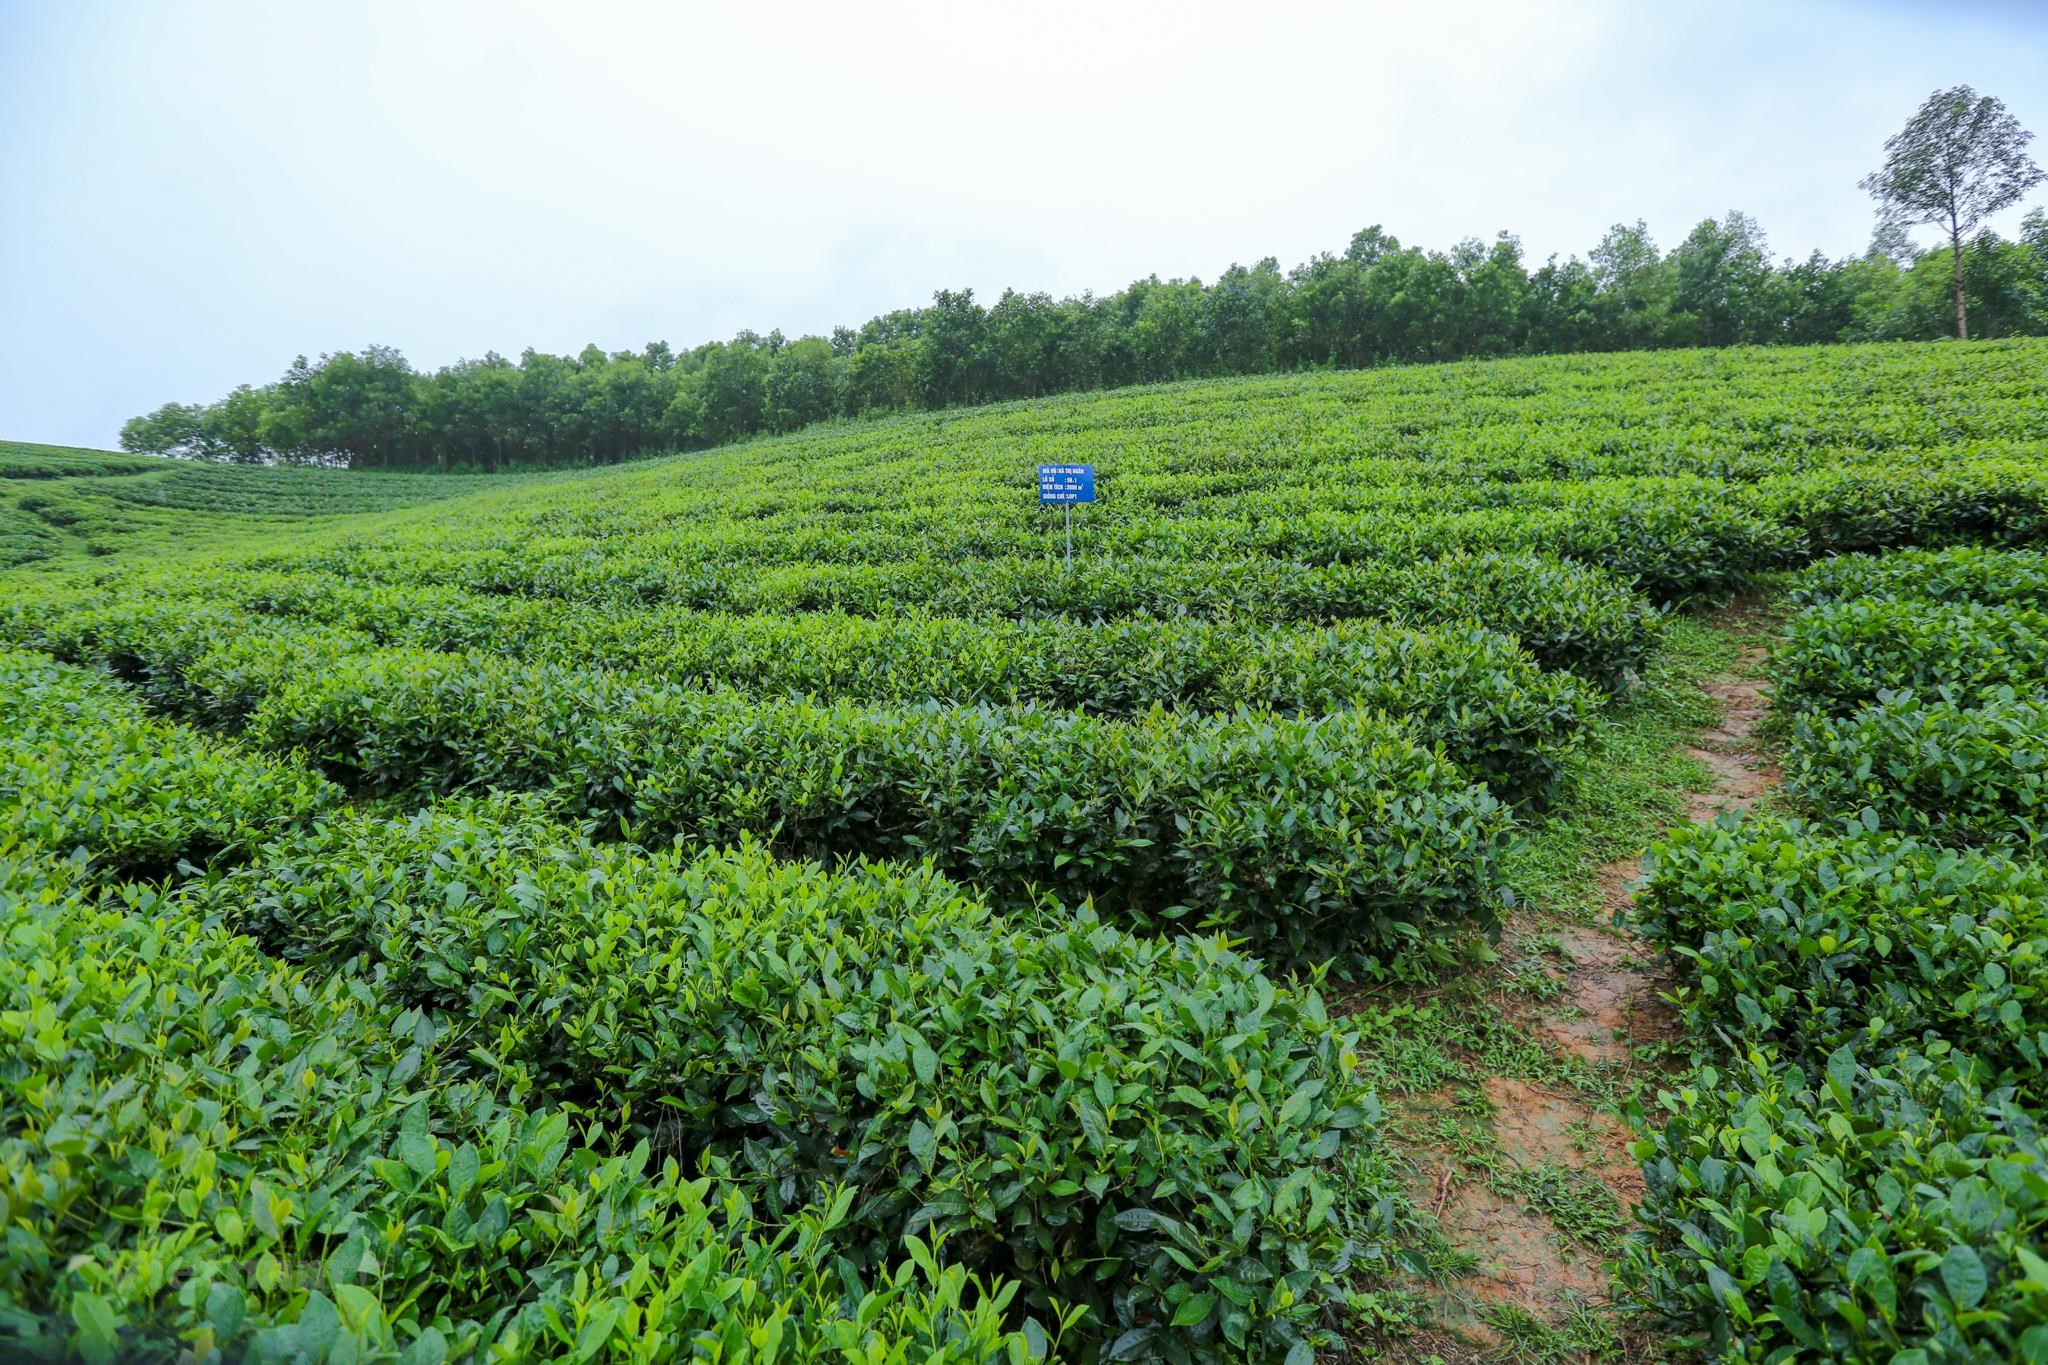  球江镇正采用越南良好农业规范（VietGAP）标准来展开种植茶树，种植面积达50公顷。图自越通社